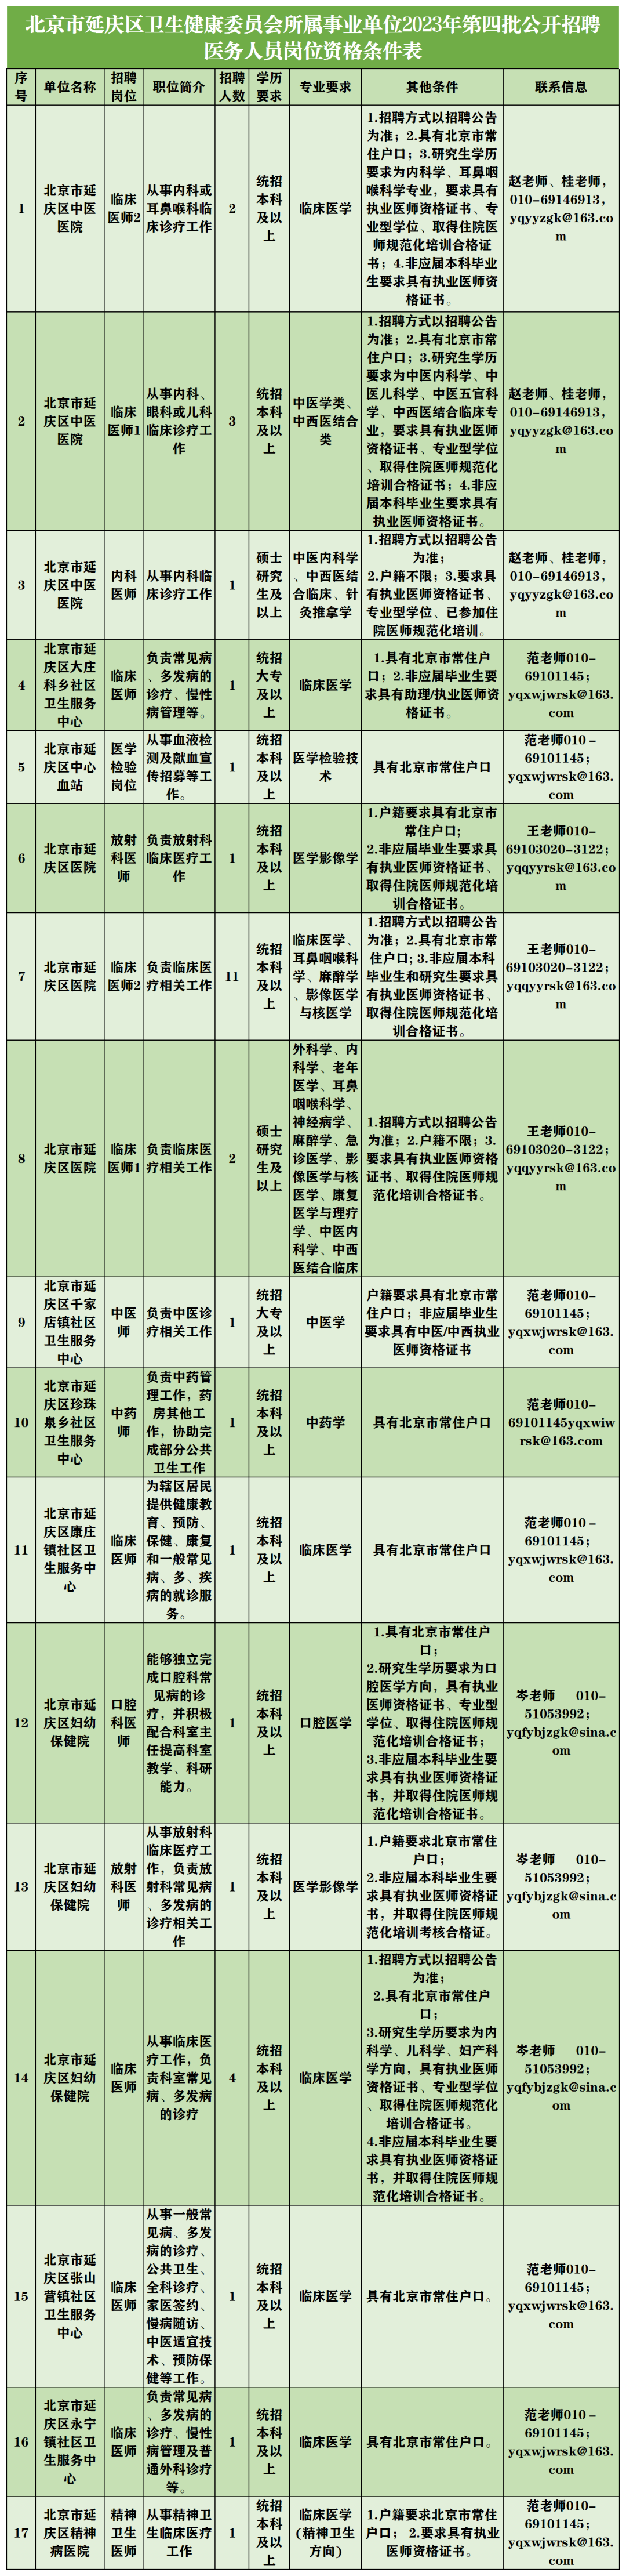 延庆市卫生健康委员会所属事业单位招录工作人员34人